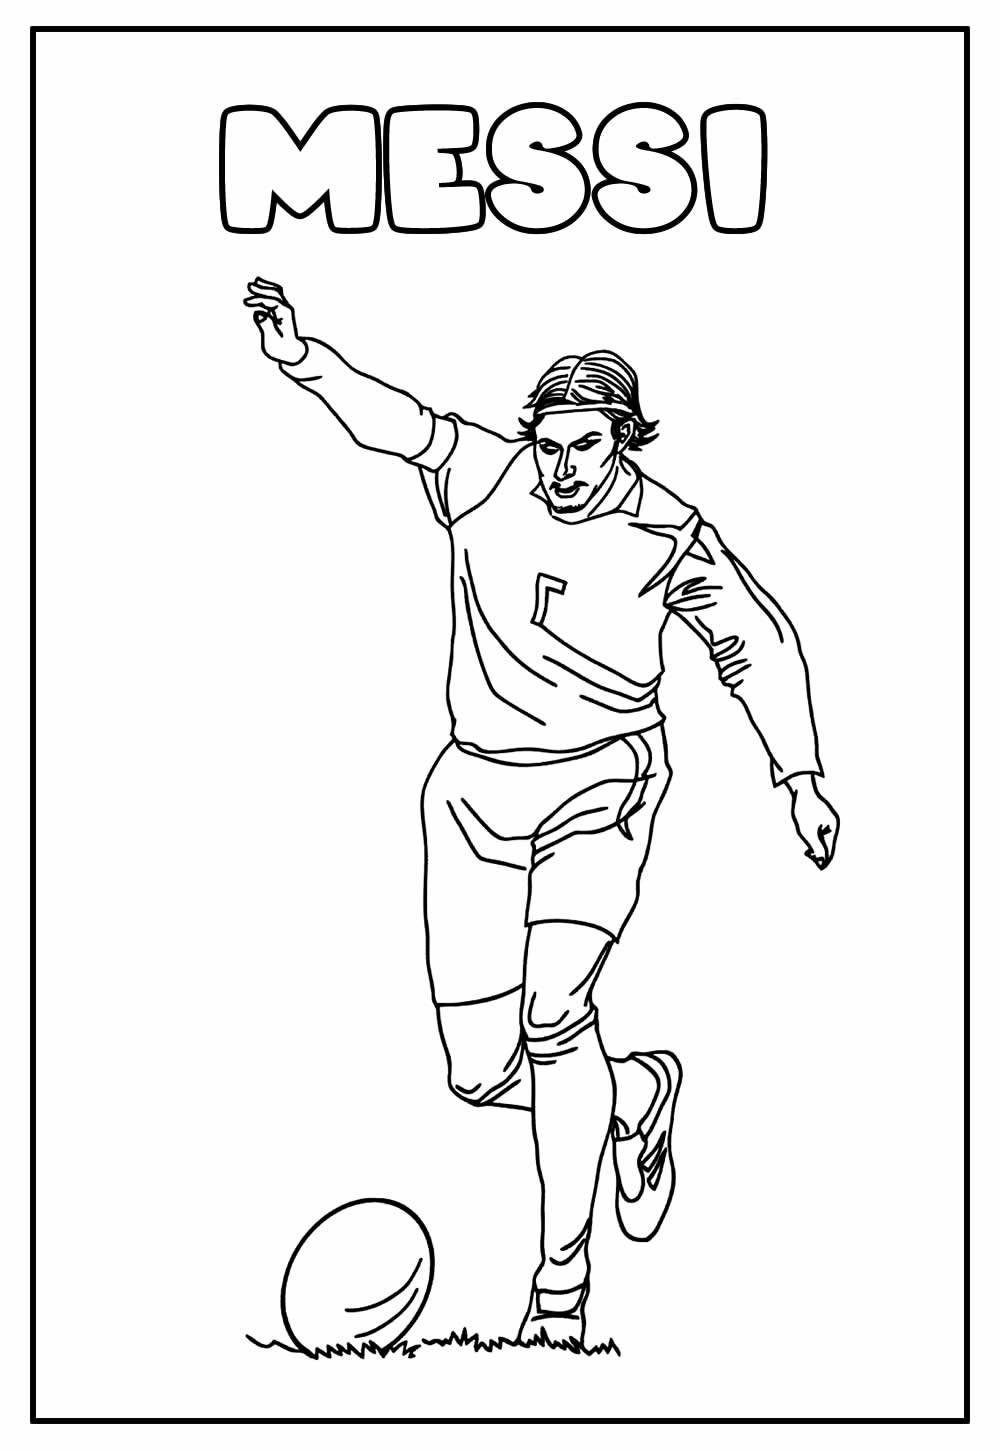 Desenho para colorir de Messi - Imagem Educativa